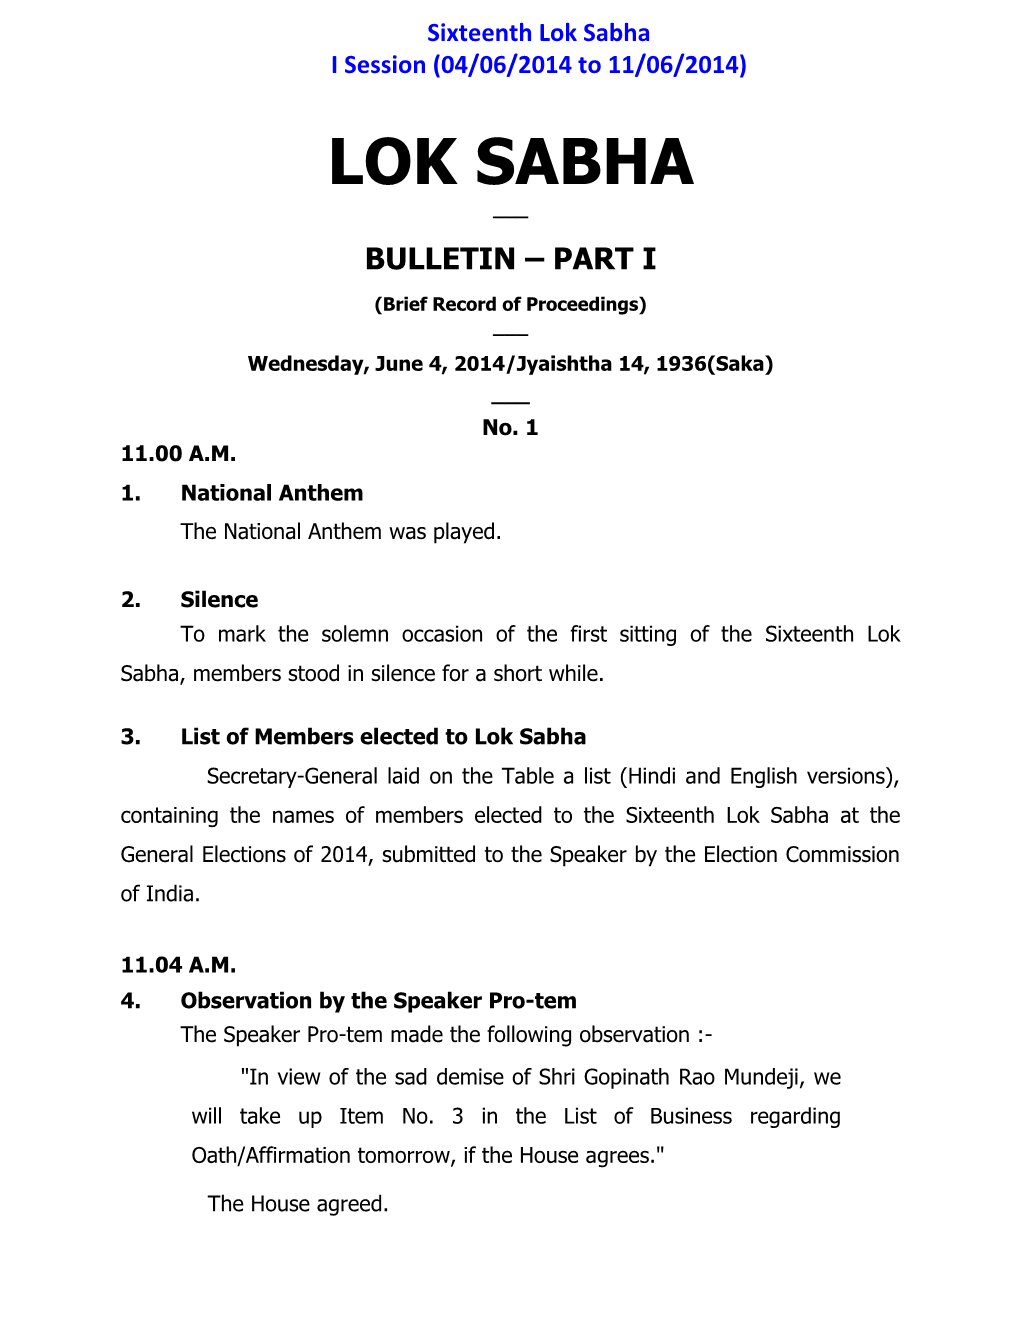 Lok Sabha I Session (04/06/2014 to 11/06/2014) LOK SABHA ___ BULLETIN – PART I